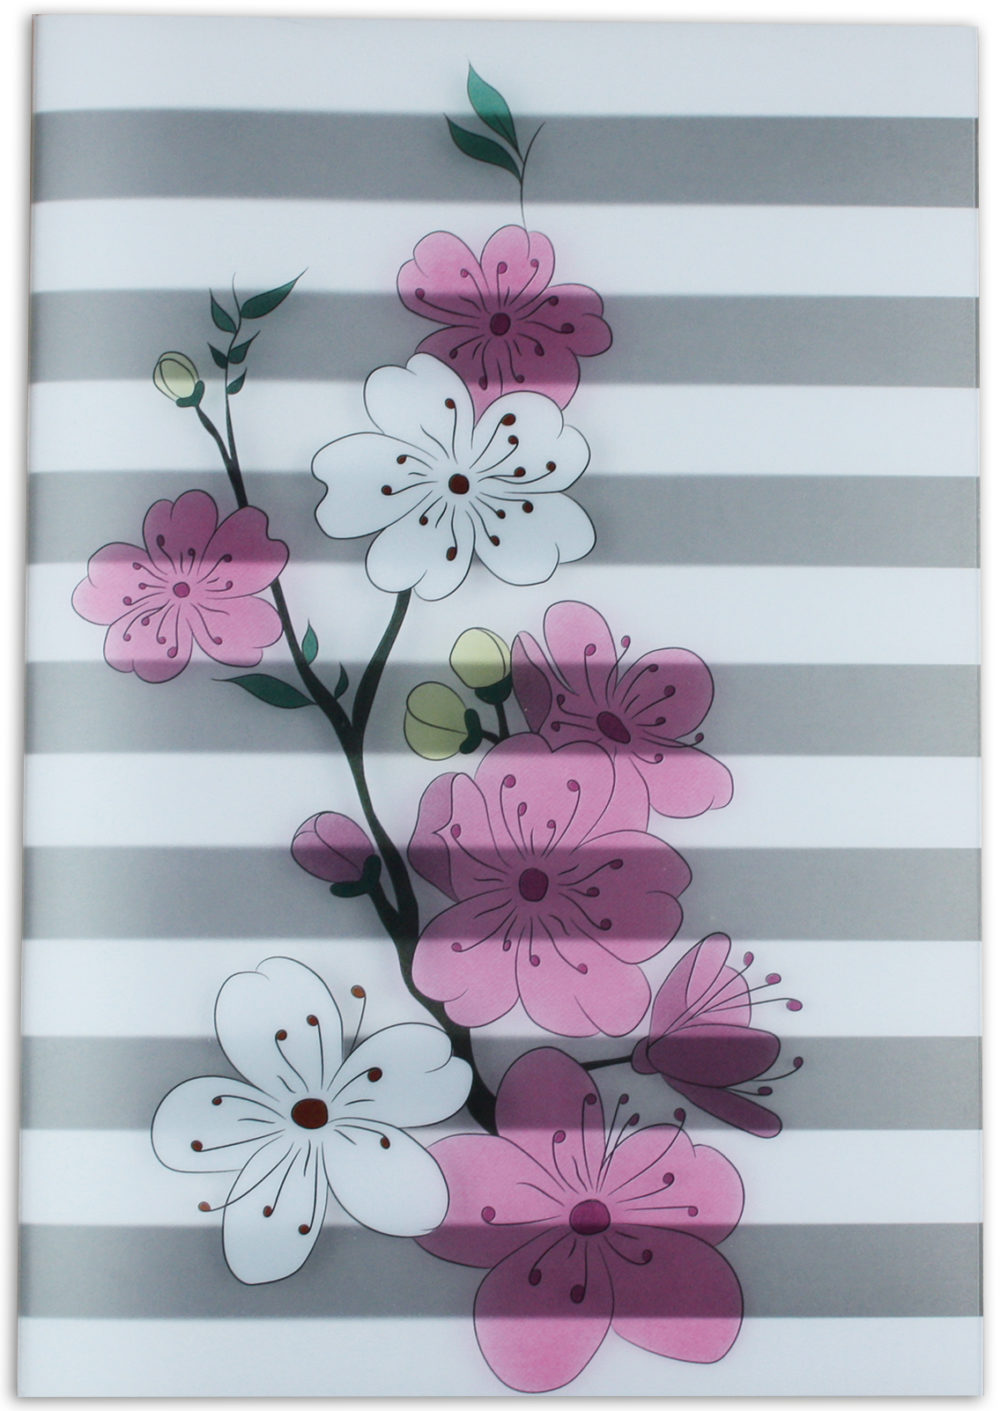 Heft "Kirschblüten" im PP Umschlag Vorderseite gestreift mit Kirschblüten